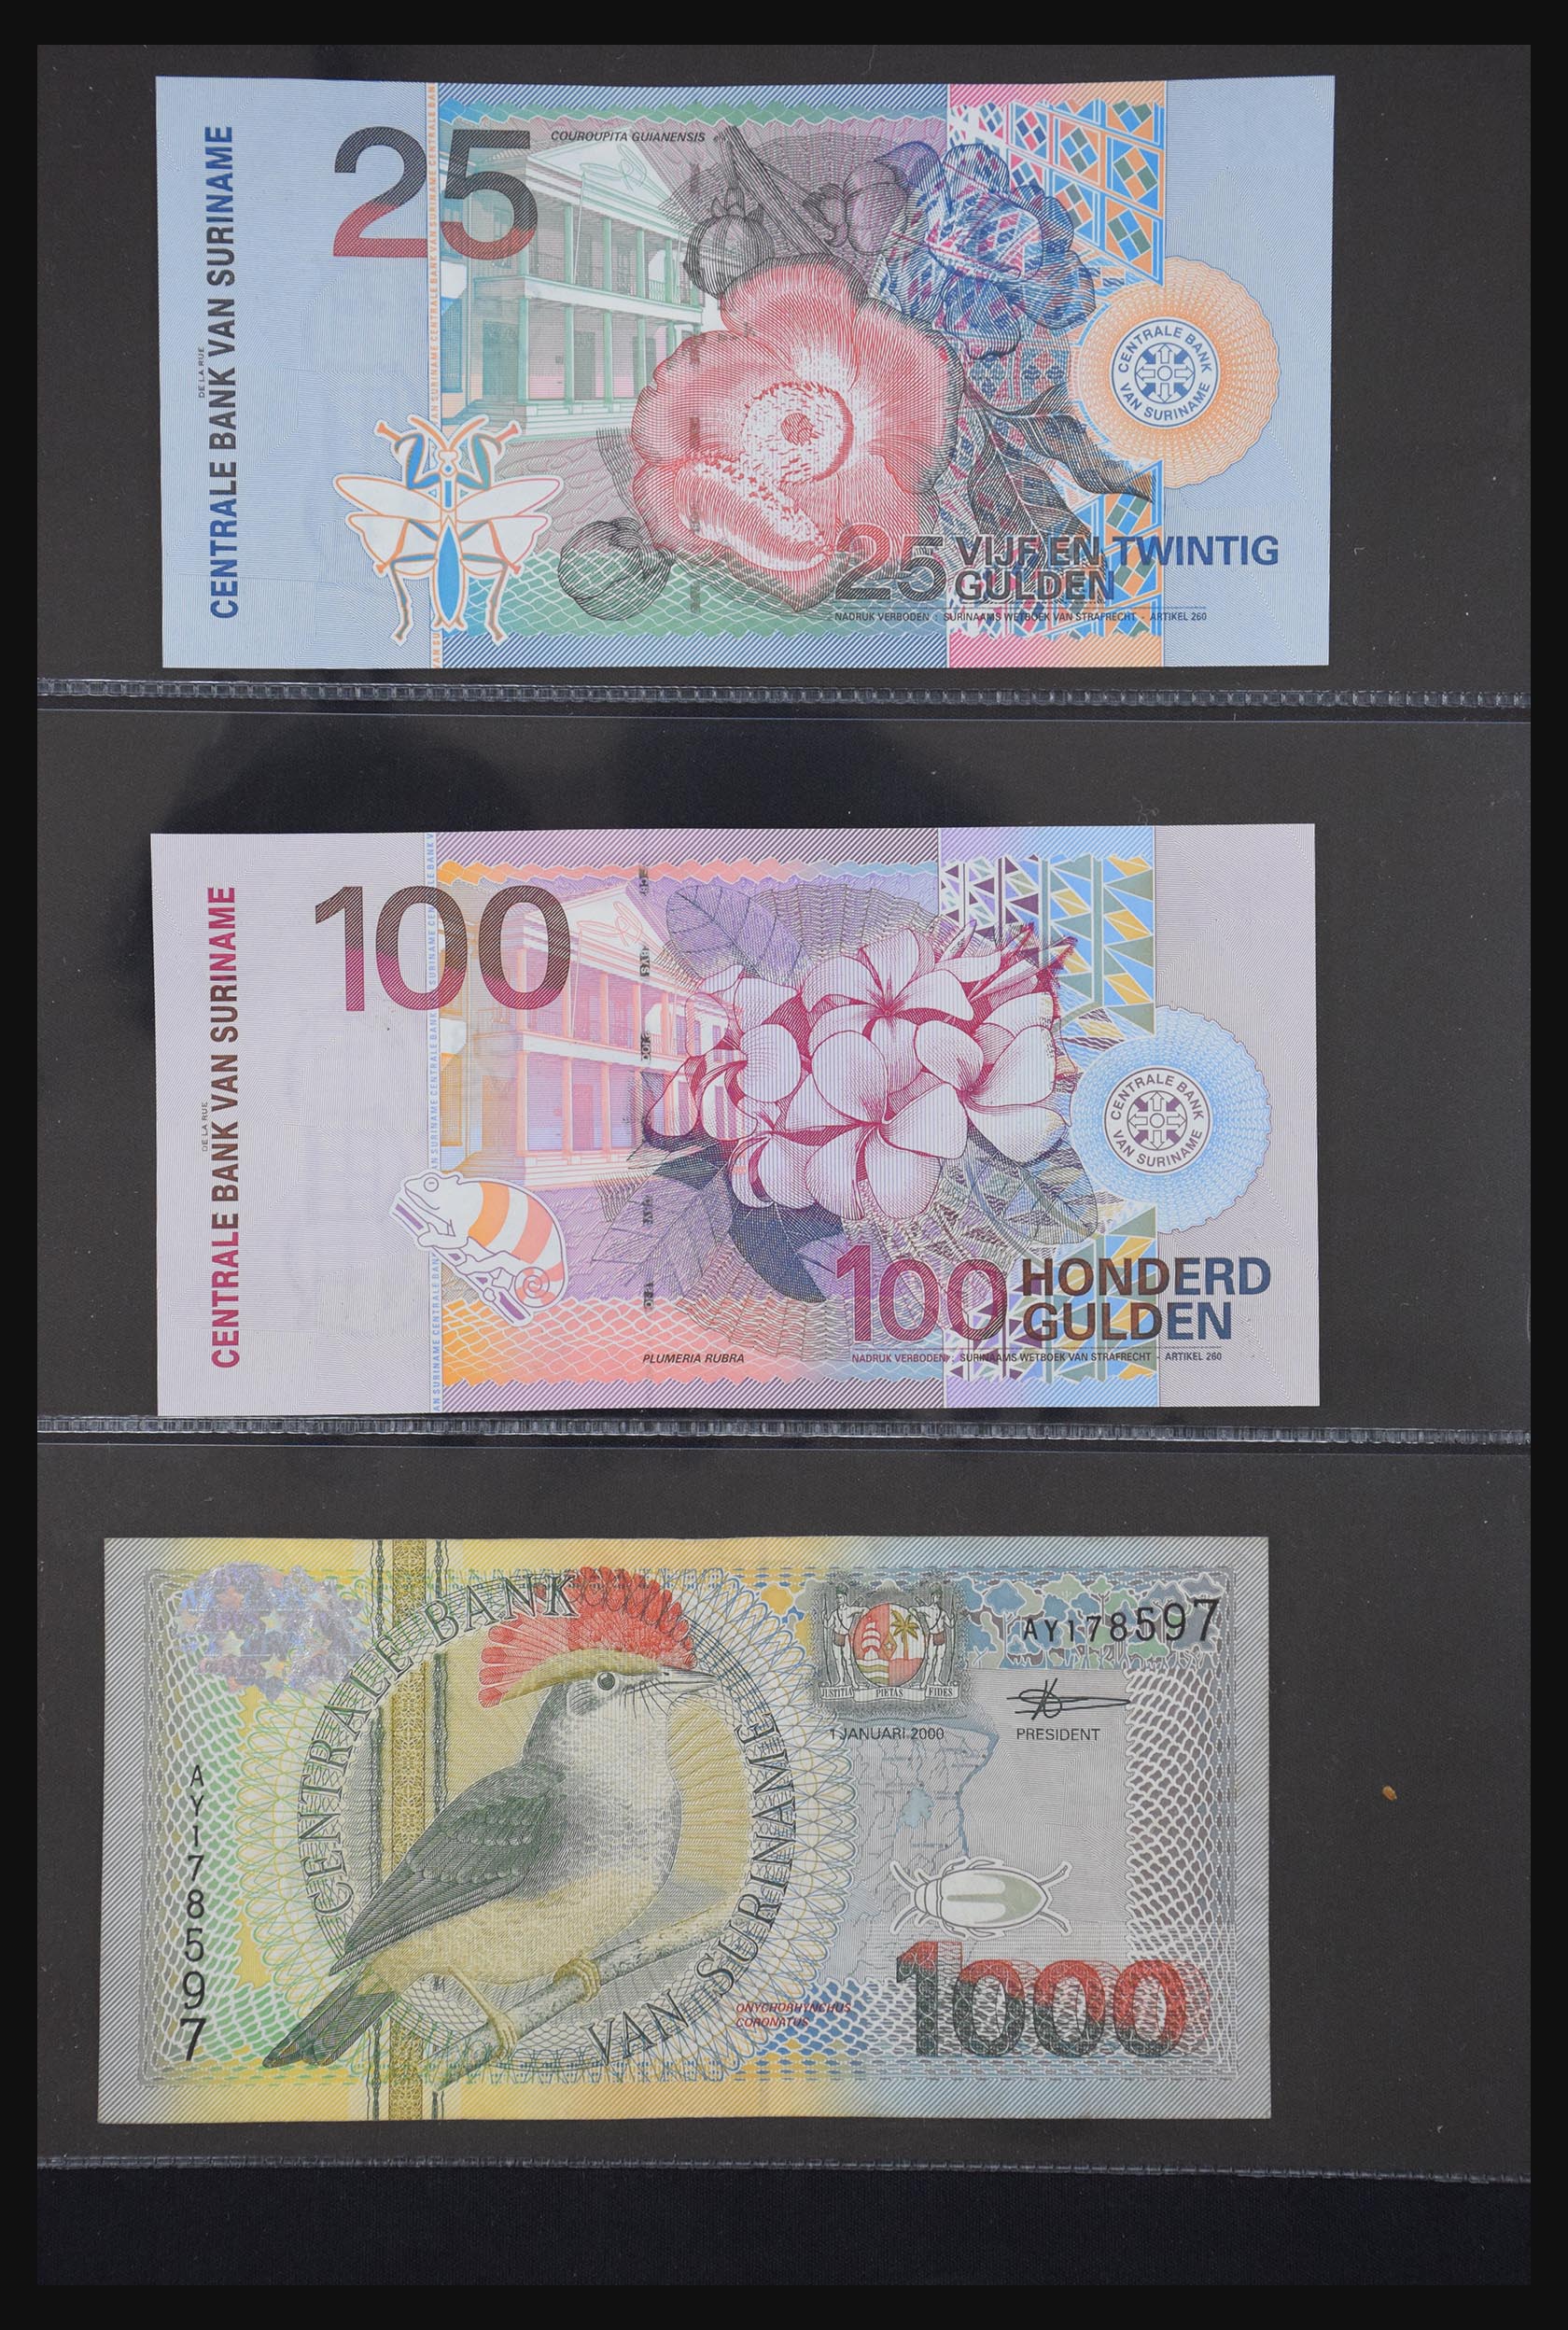 29404 055 - 29404 Netherlands banknotes 1924-1997.